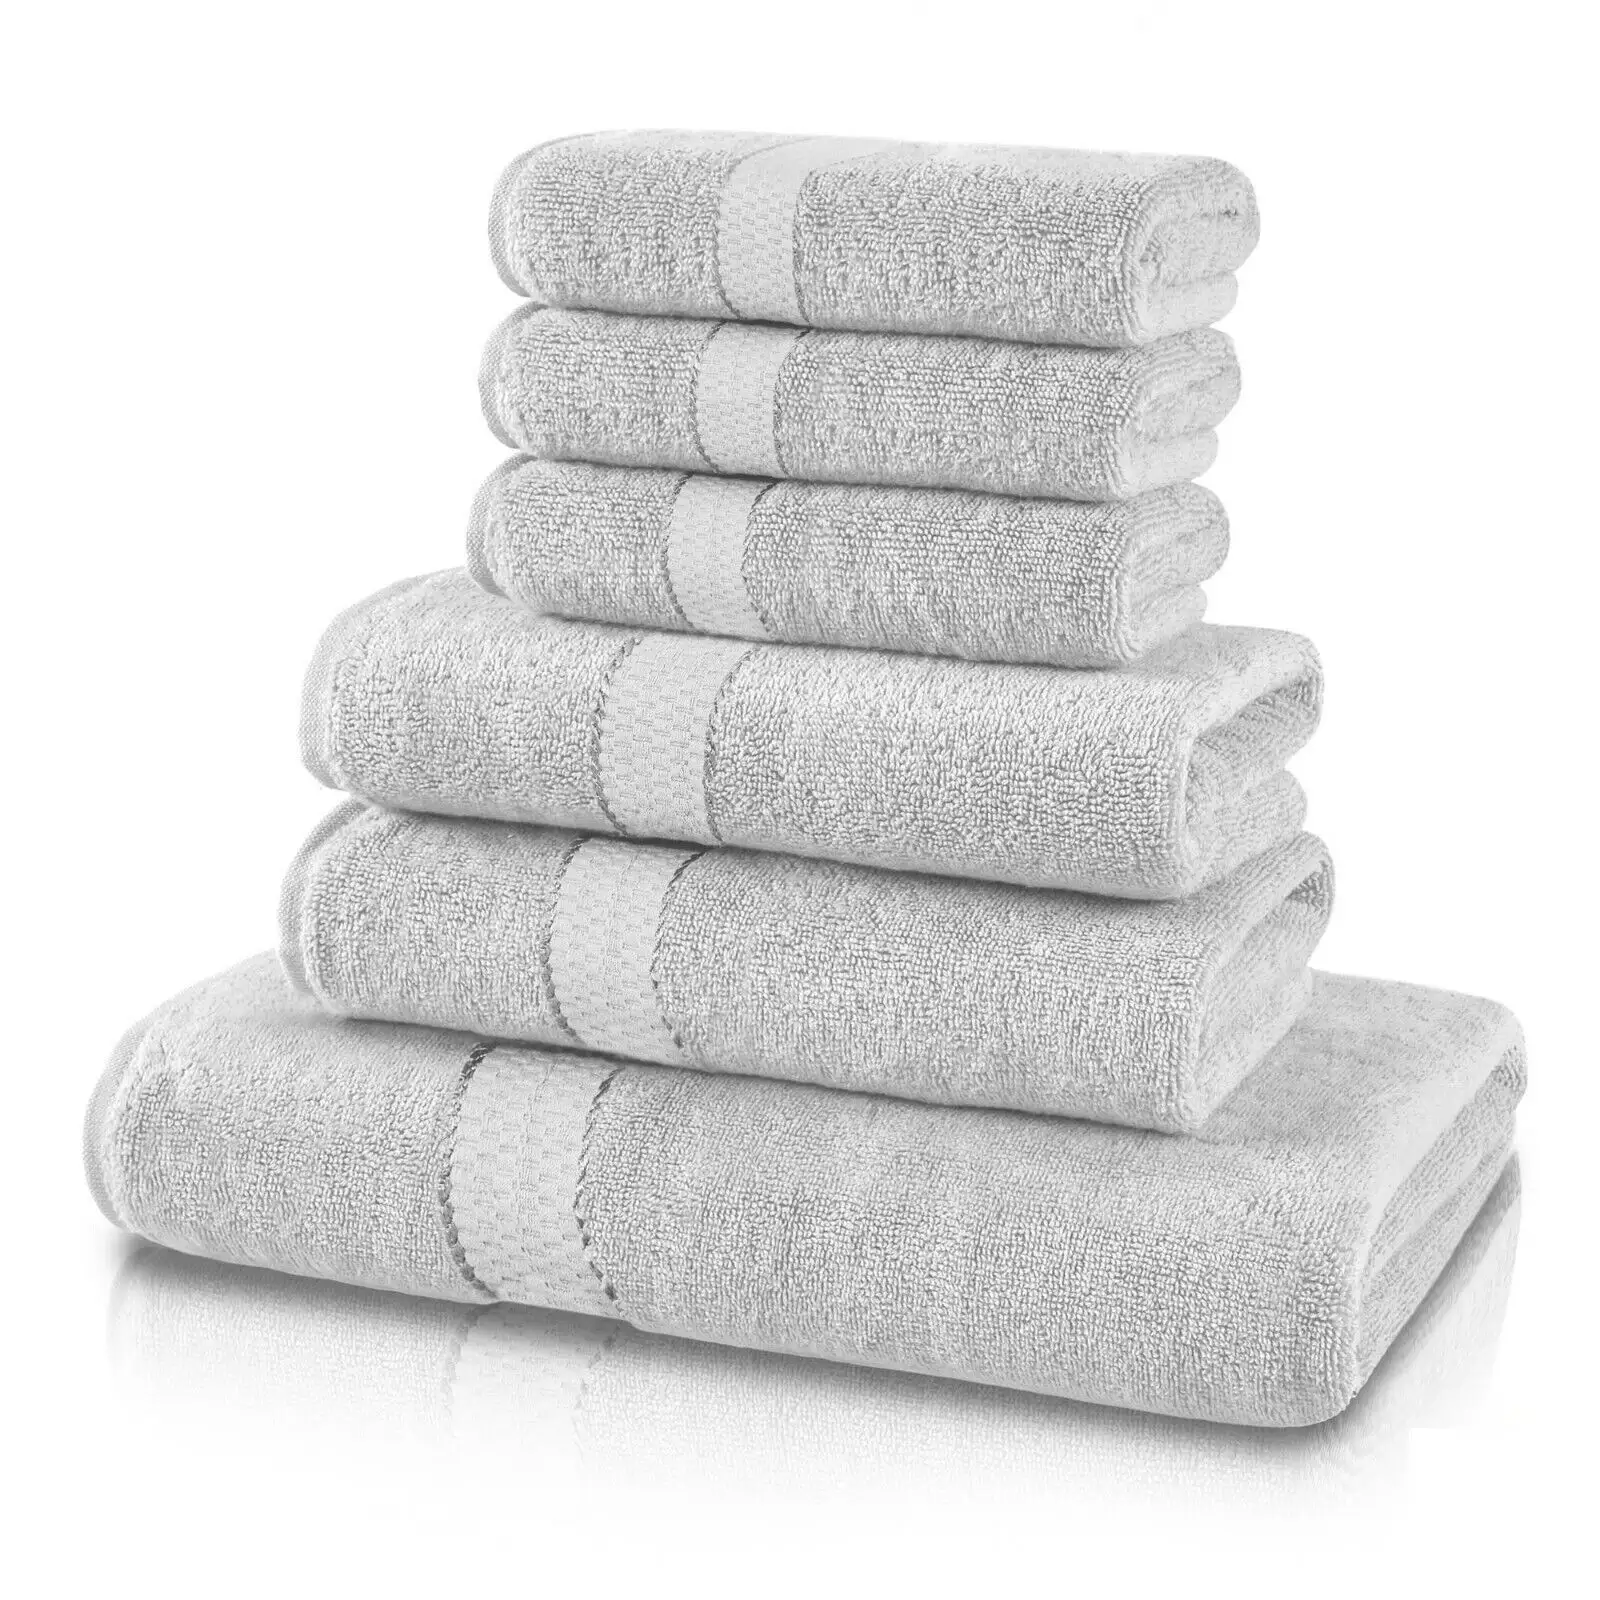 Vente en gros de serviettes d'hôtel 100% coton serviettes de bain drap luxe doux ensemble de salle de bain